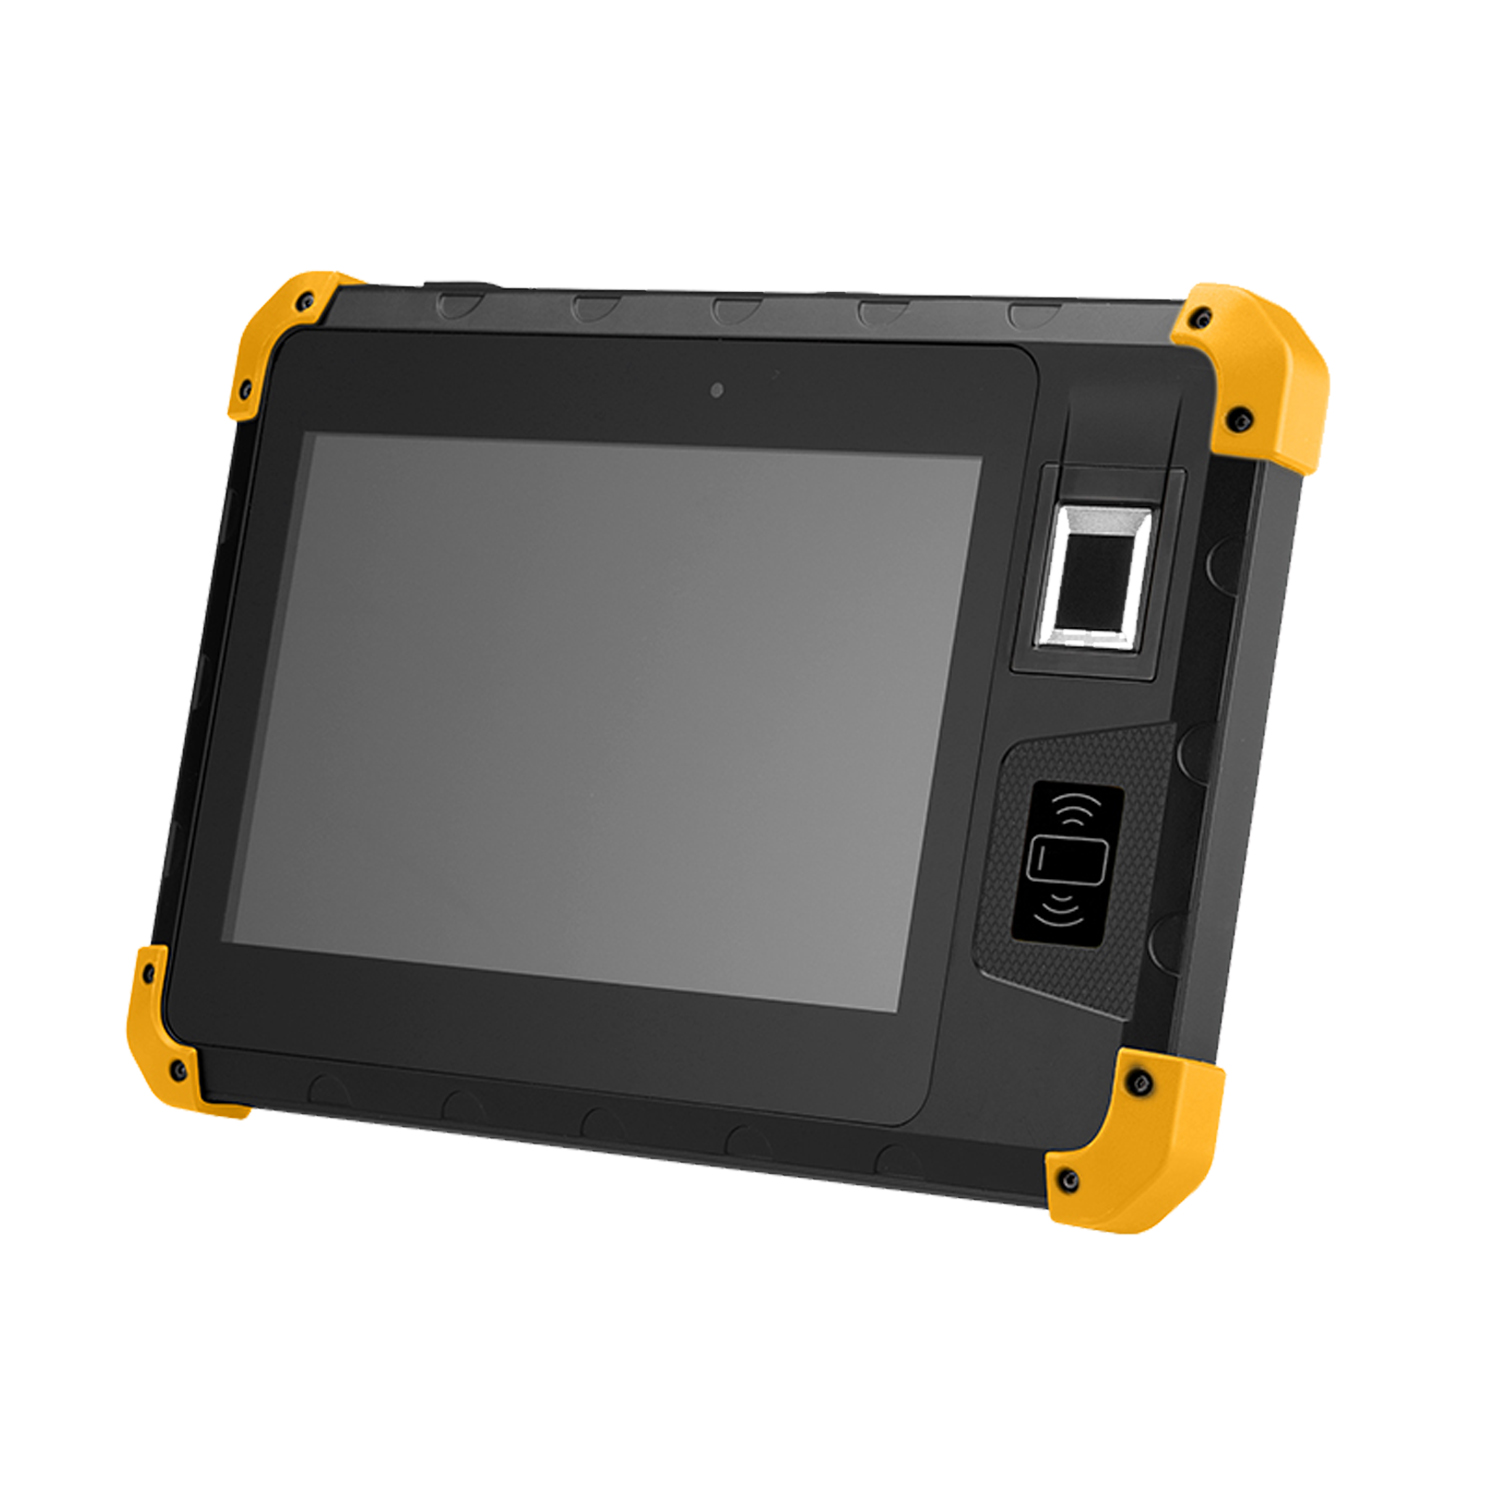 Posición industrial de la tableta de la PC de Android de la frecuencia ultraelevada de NFC 4G de 8 pulgadas con la huella dactilar Z200